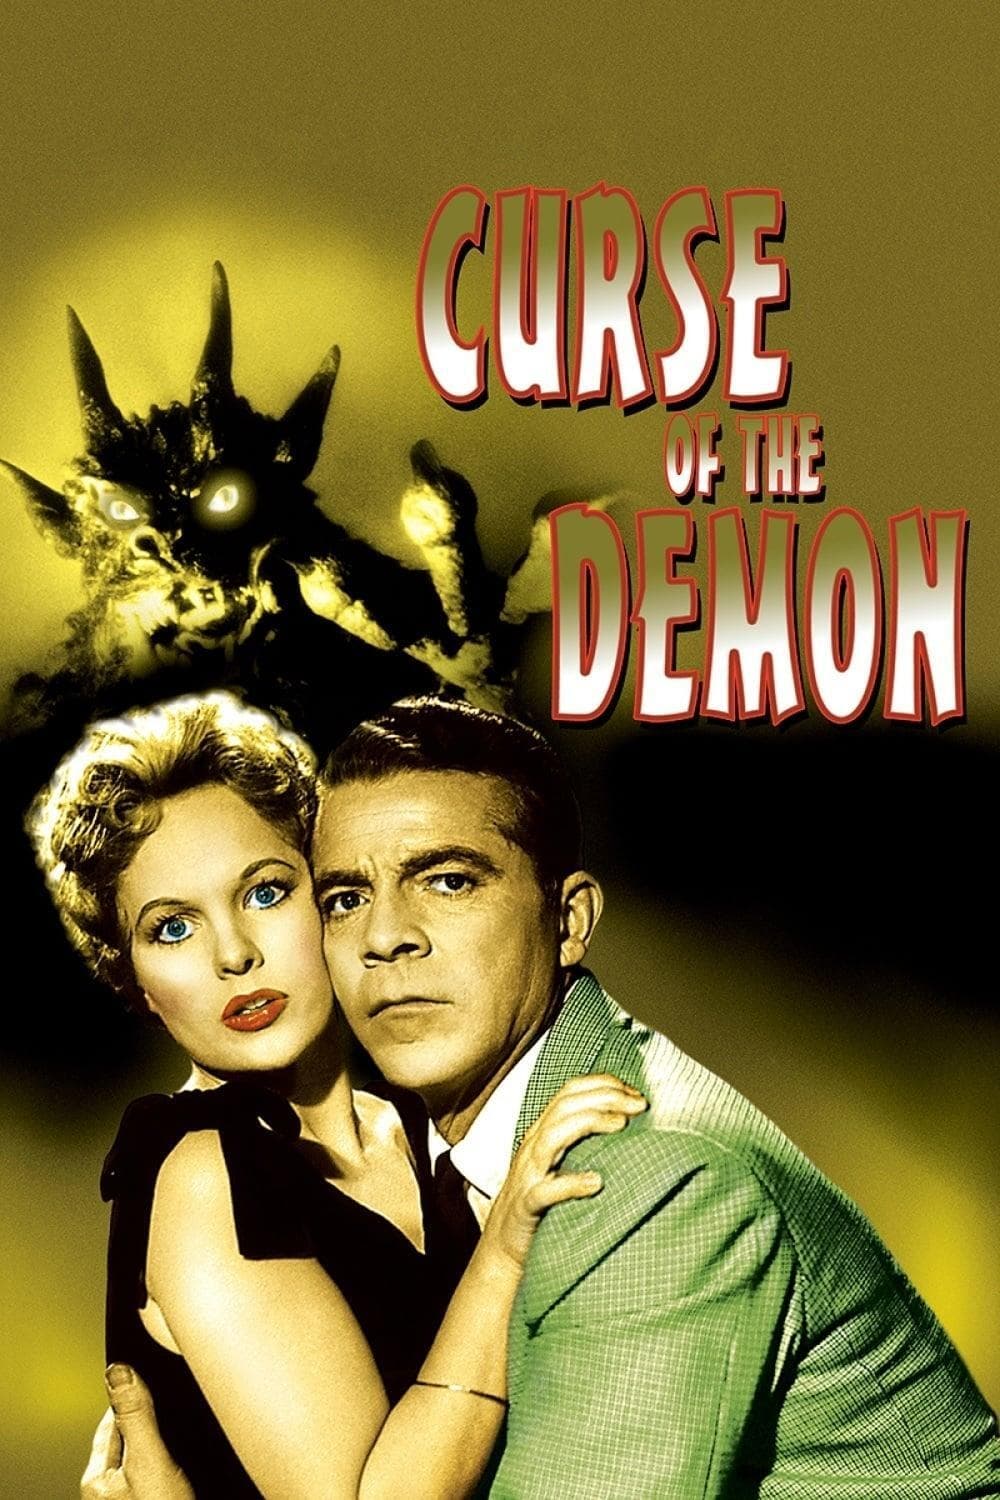 La noche del demonio (1957)